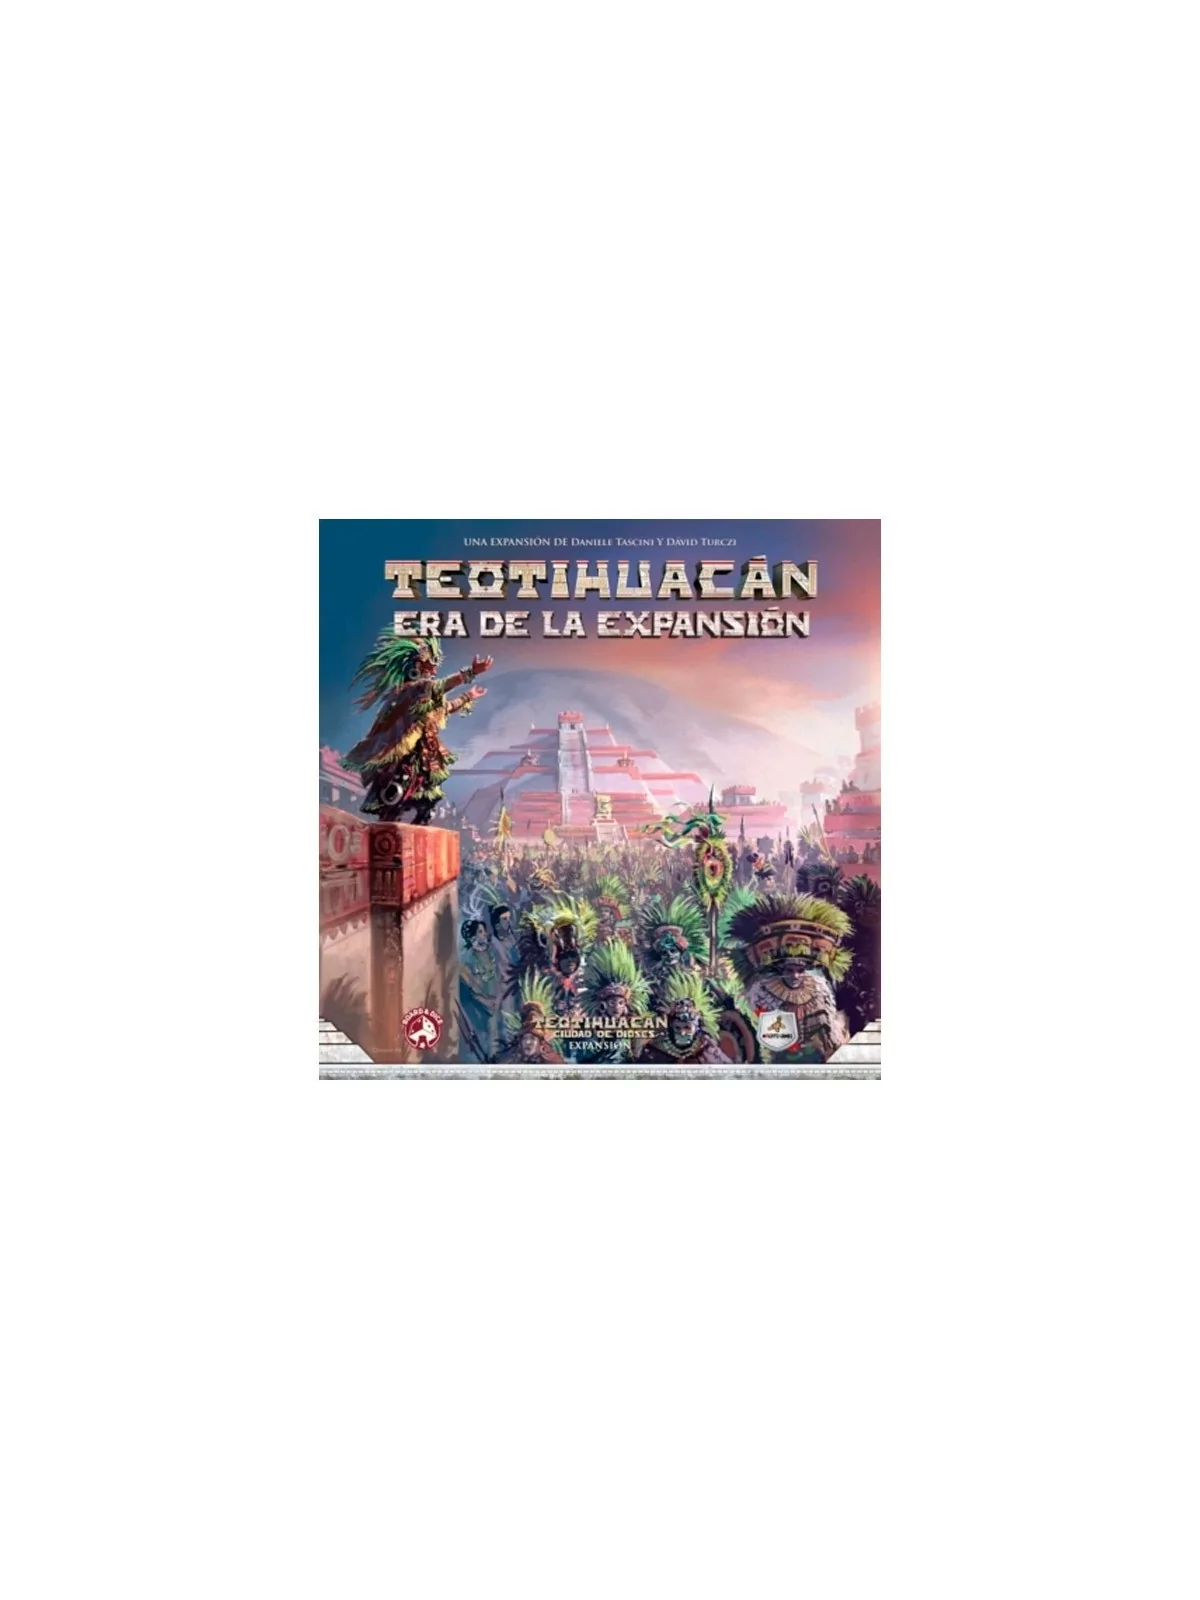 Comprar Teotihuacán: Era de la Expansión barato al mejor precio 27,00 